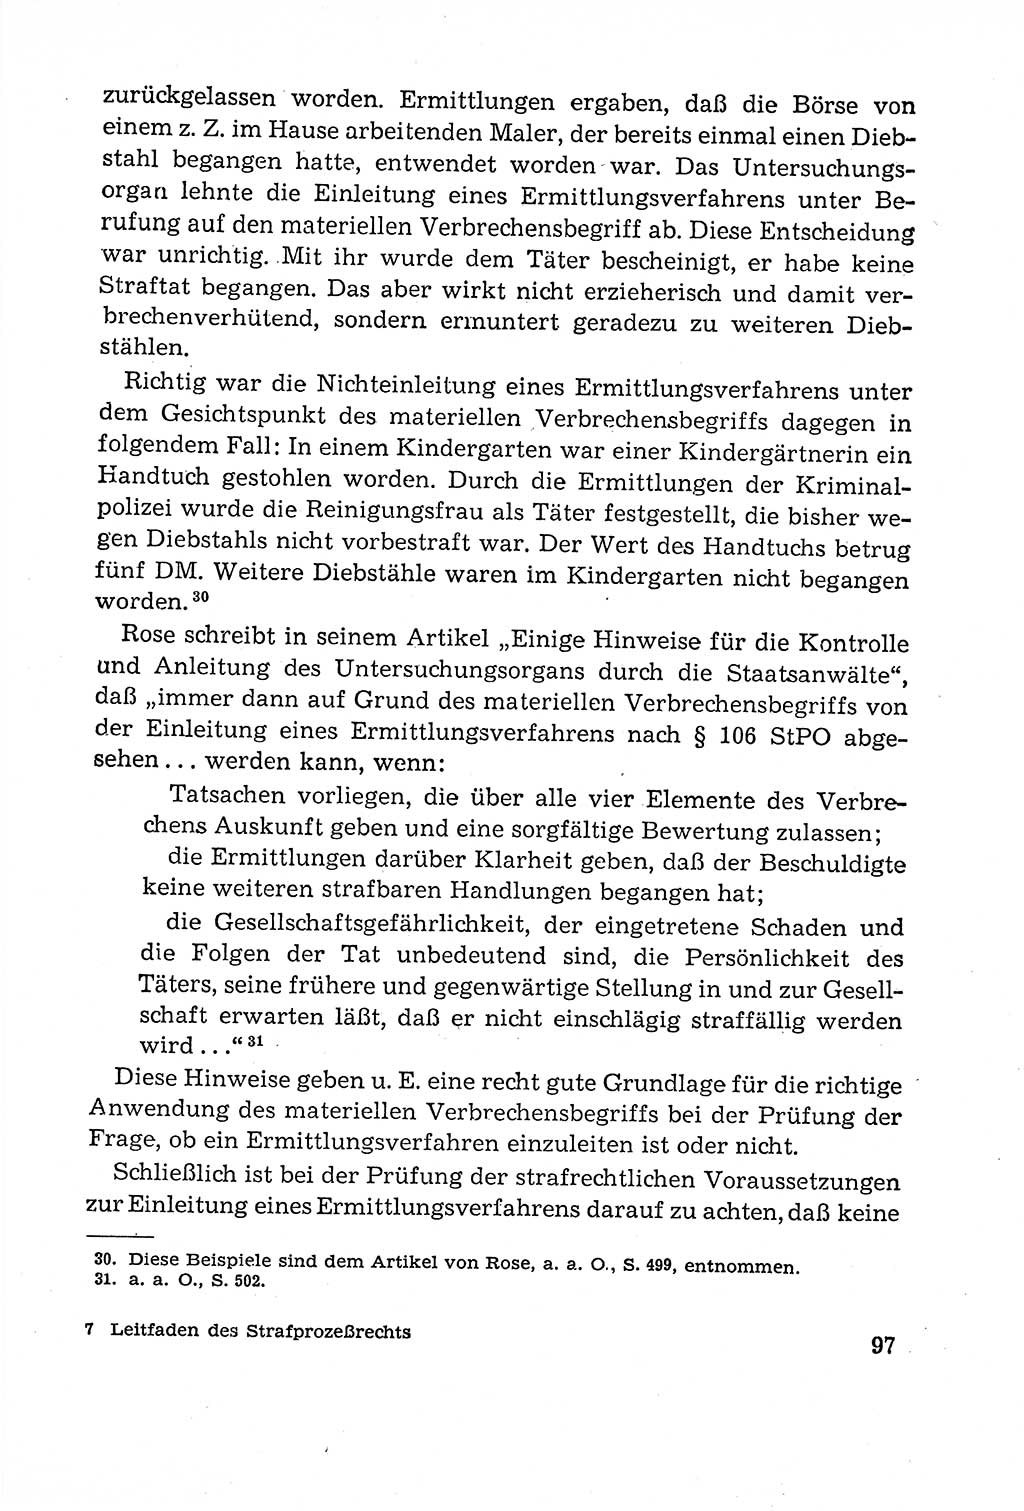 Leitfaden des Strafprozeßrechts der Deutschen Demokratischen Republik (DDR) 1959, Seite 97 (LF StPR DDR 1959, S. 97)